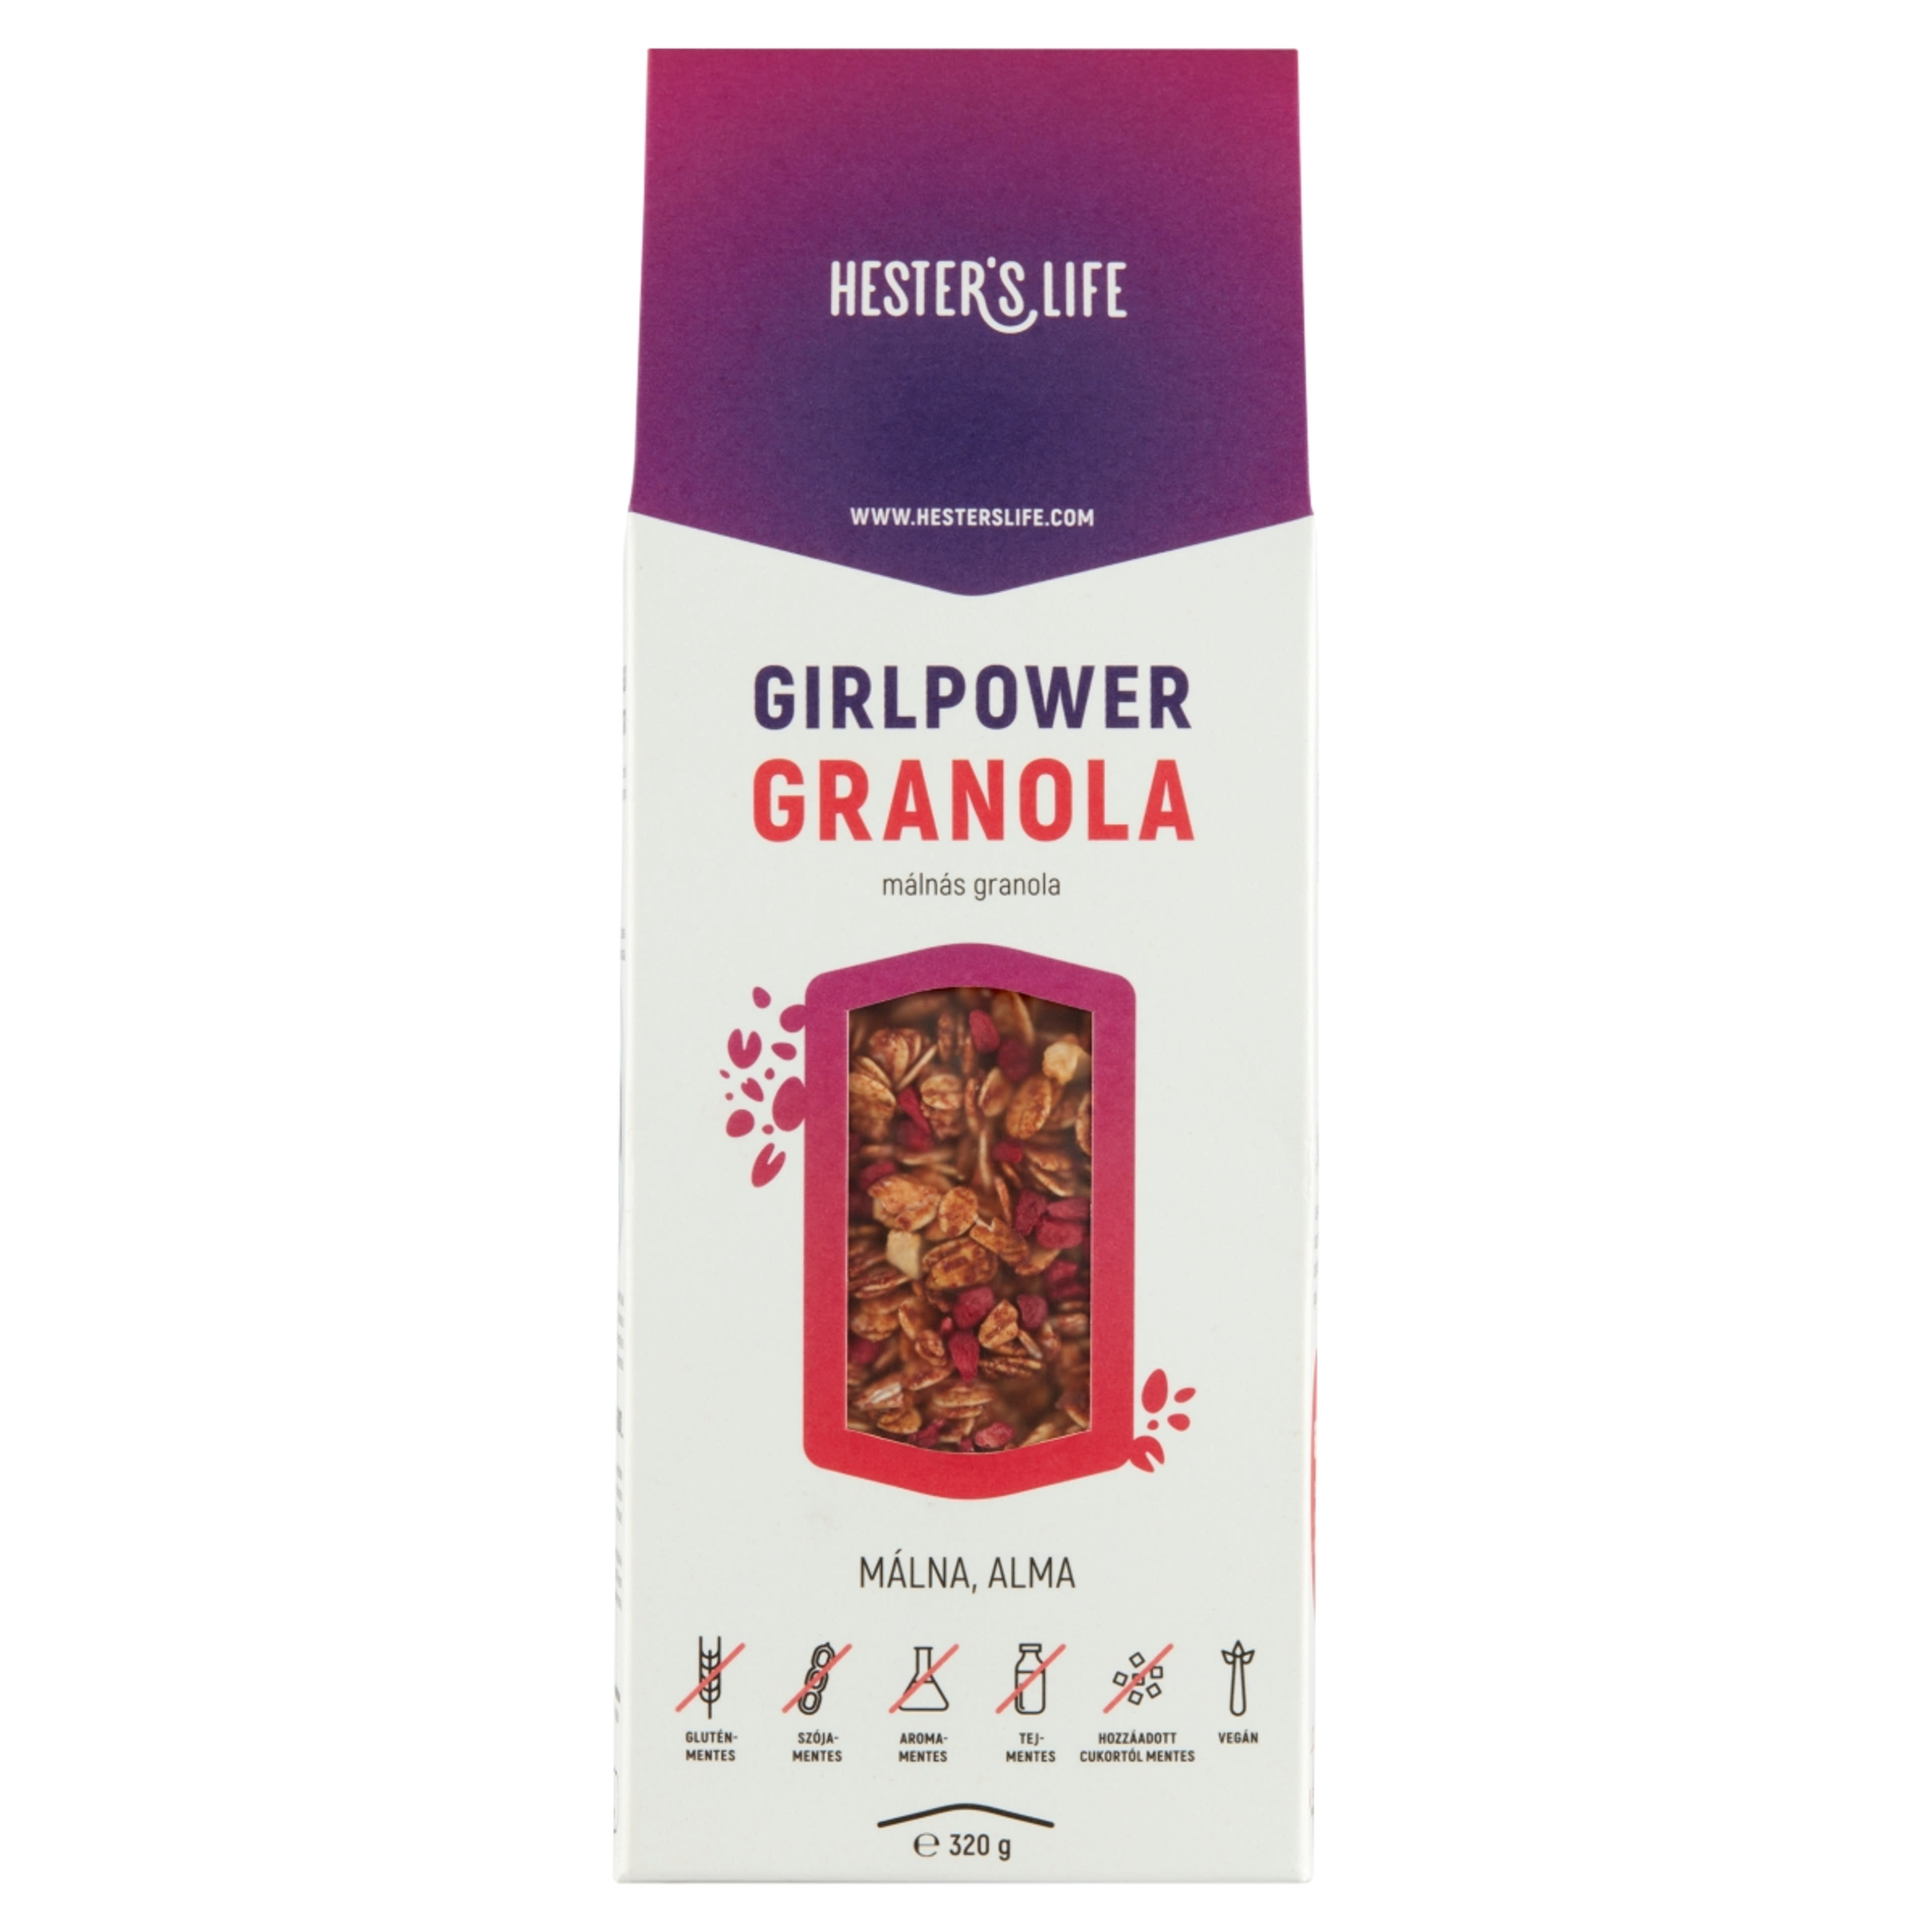 Hester's life girlpower granola - 320 g